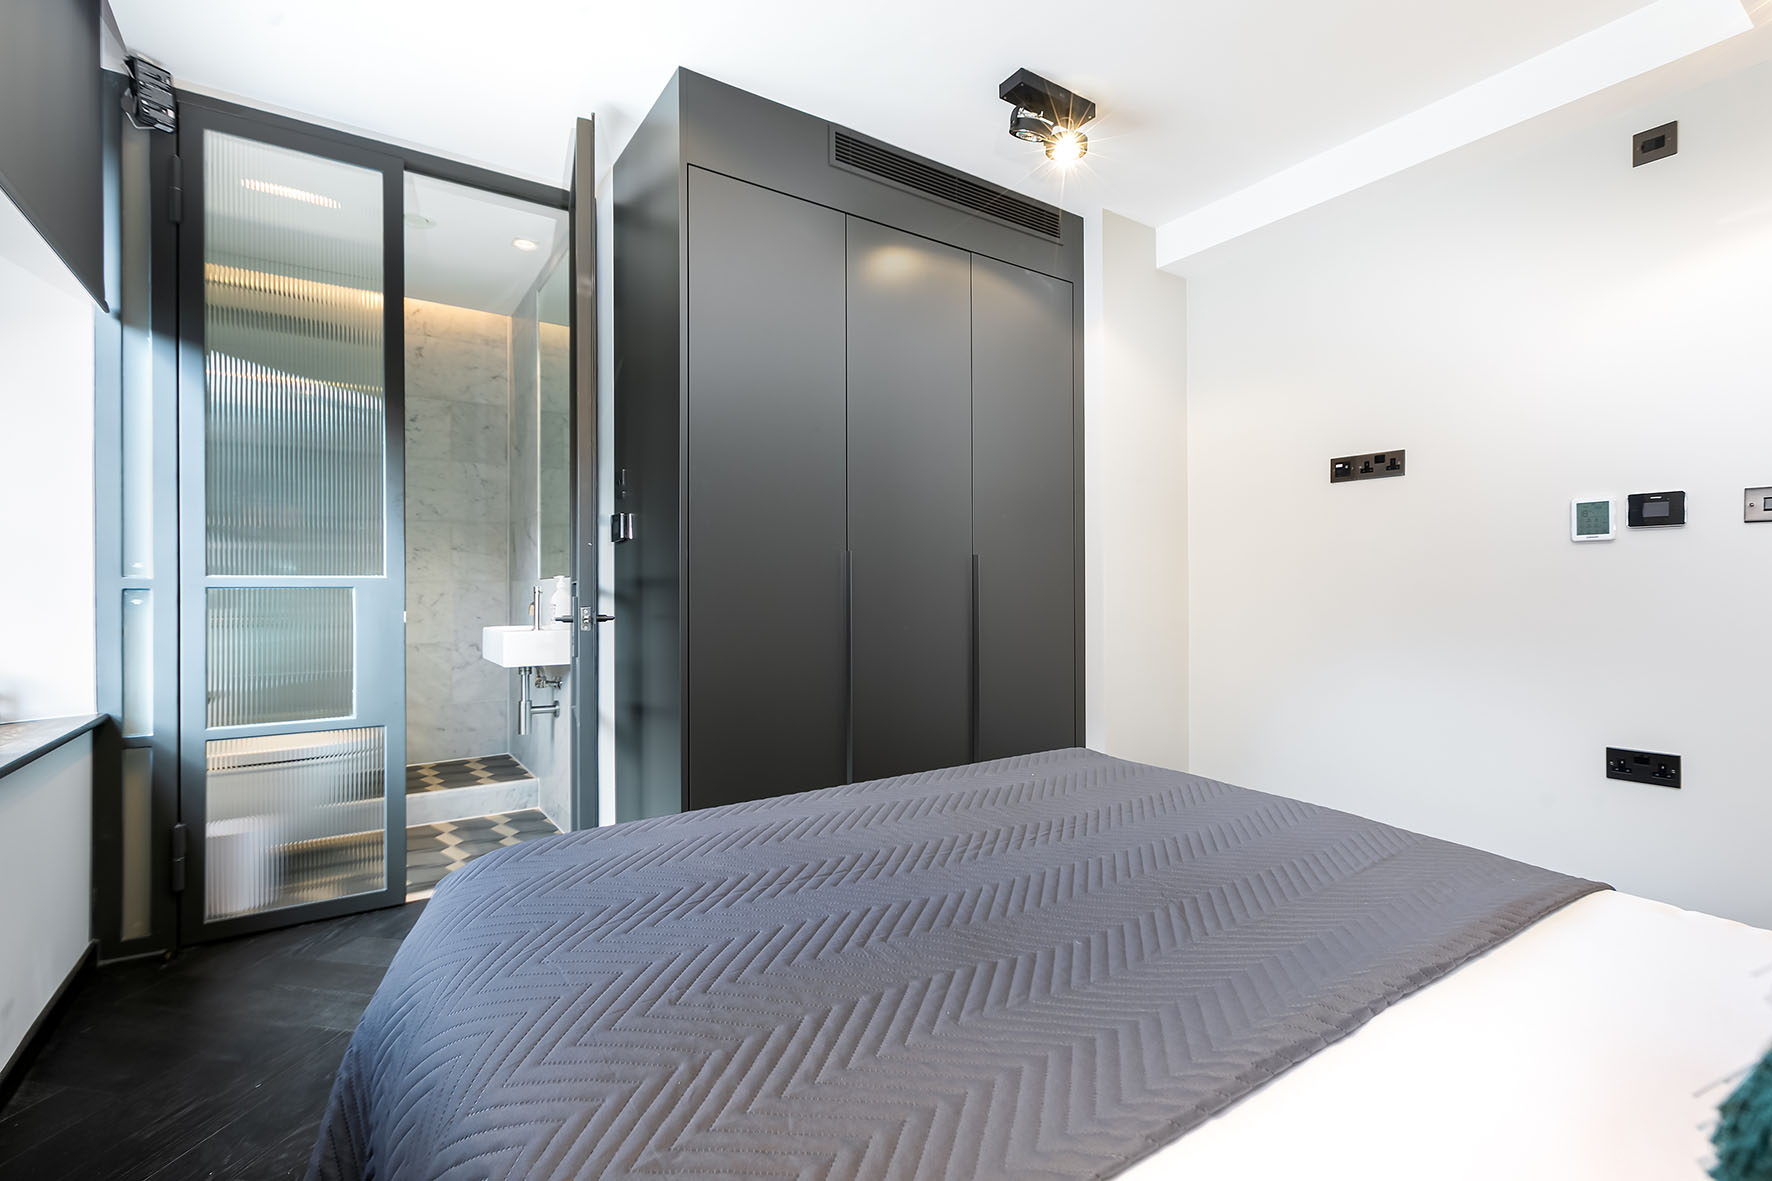 Lovelydays luxury service apartment rental - Soho - Noel Street VI - Lovelysuite - 2 bedrooms - 2 bathrooms - Queen bed - luxury apartment in london - 57b59932e7a9 - Lovelydays